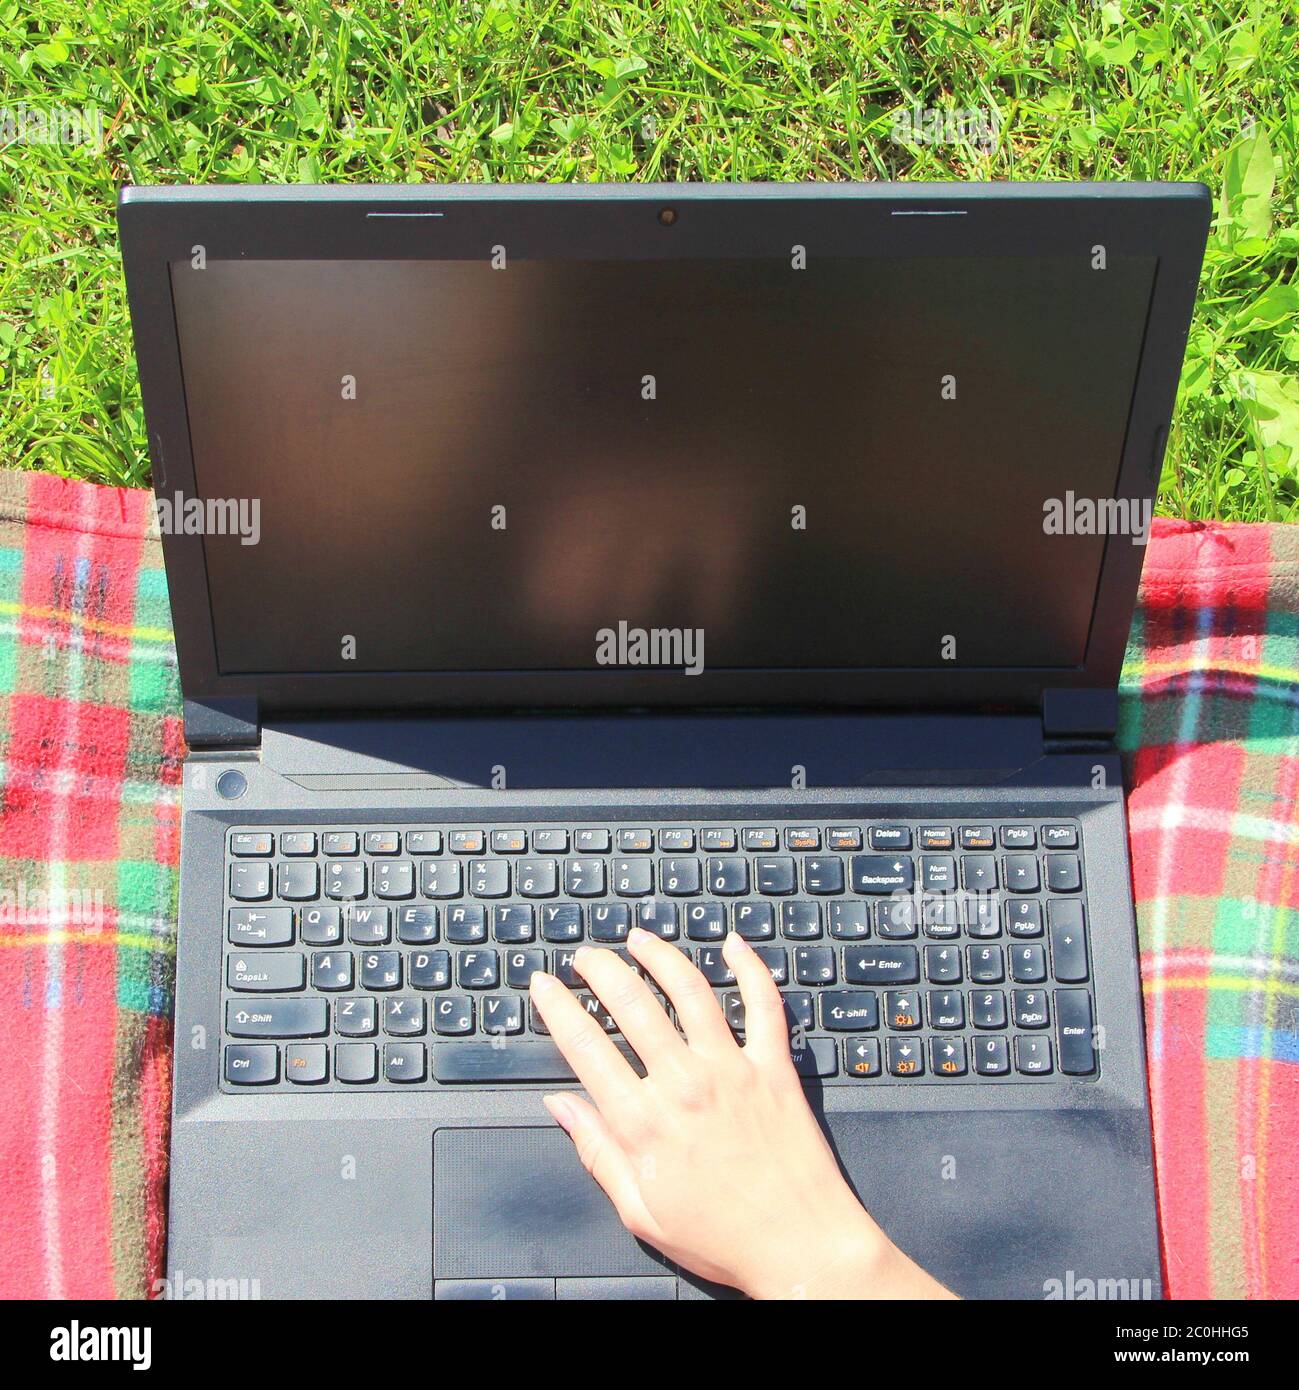 Der Laptop ist auf dem grünen Gras auf einem rot karierten Karomuschel, das Mädchen arbeitet am Computer auf dem Rasen. Die Hand des Mannes ist auf der Tastatur. Stockfoto